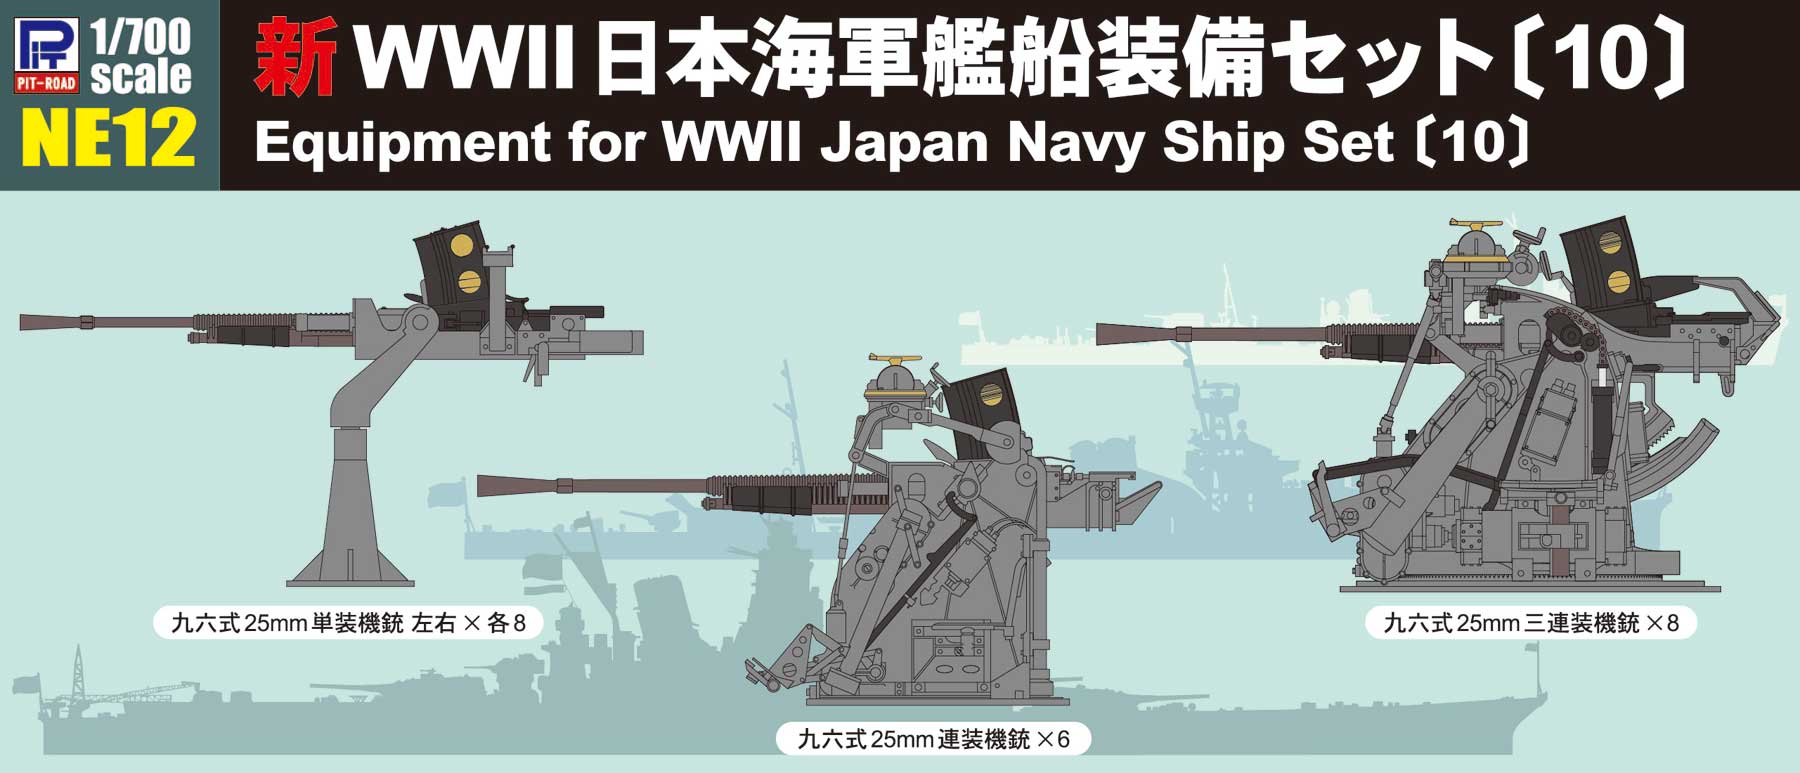 1/700 新WWII 日本海軍艦船装備セット〔10〕 - ウインドウを閉じる